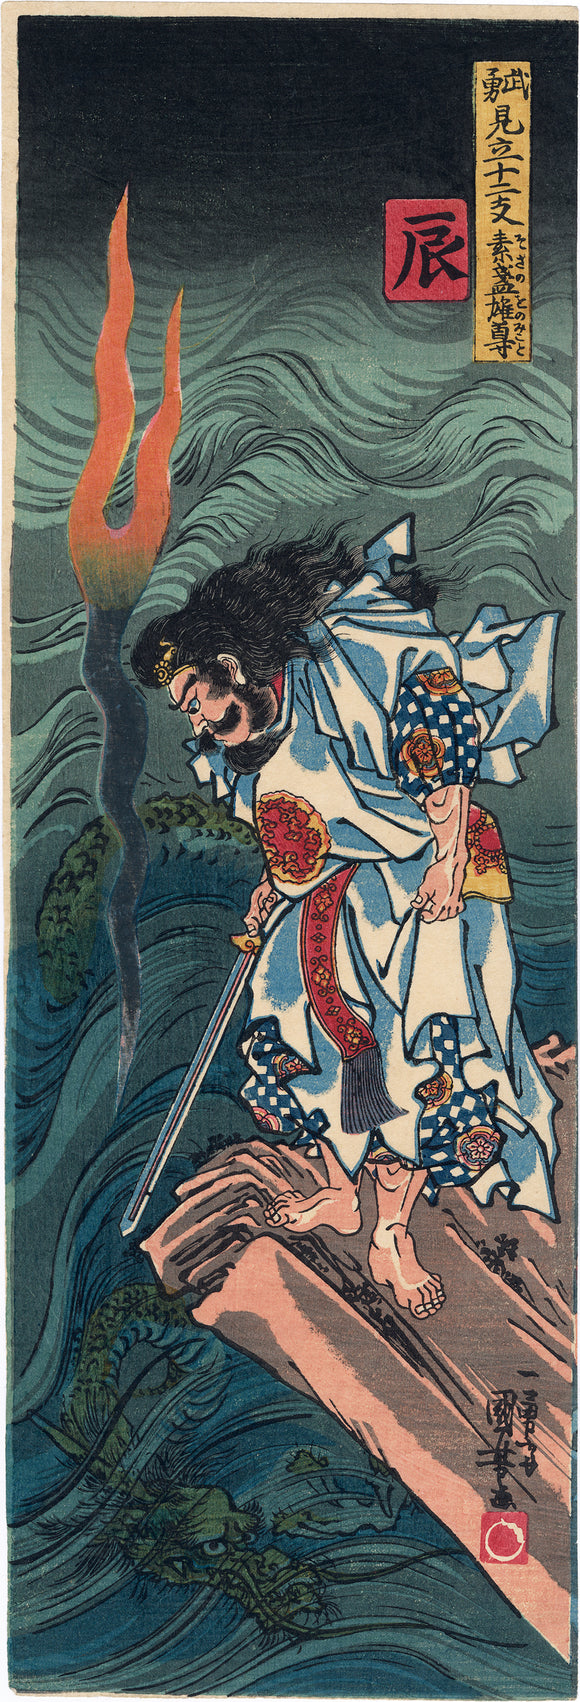 Kuniyoshi: Susano-o-no-Mikoto and Dragon 辰 (Sold)